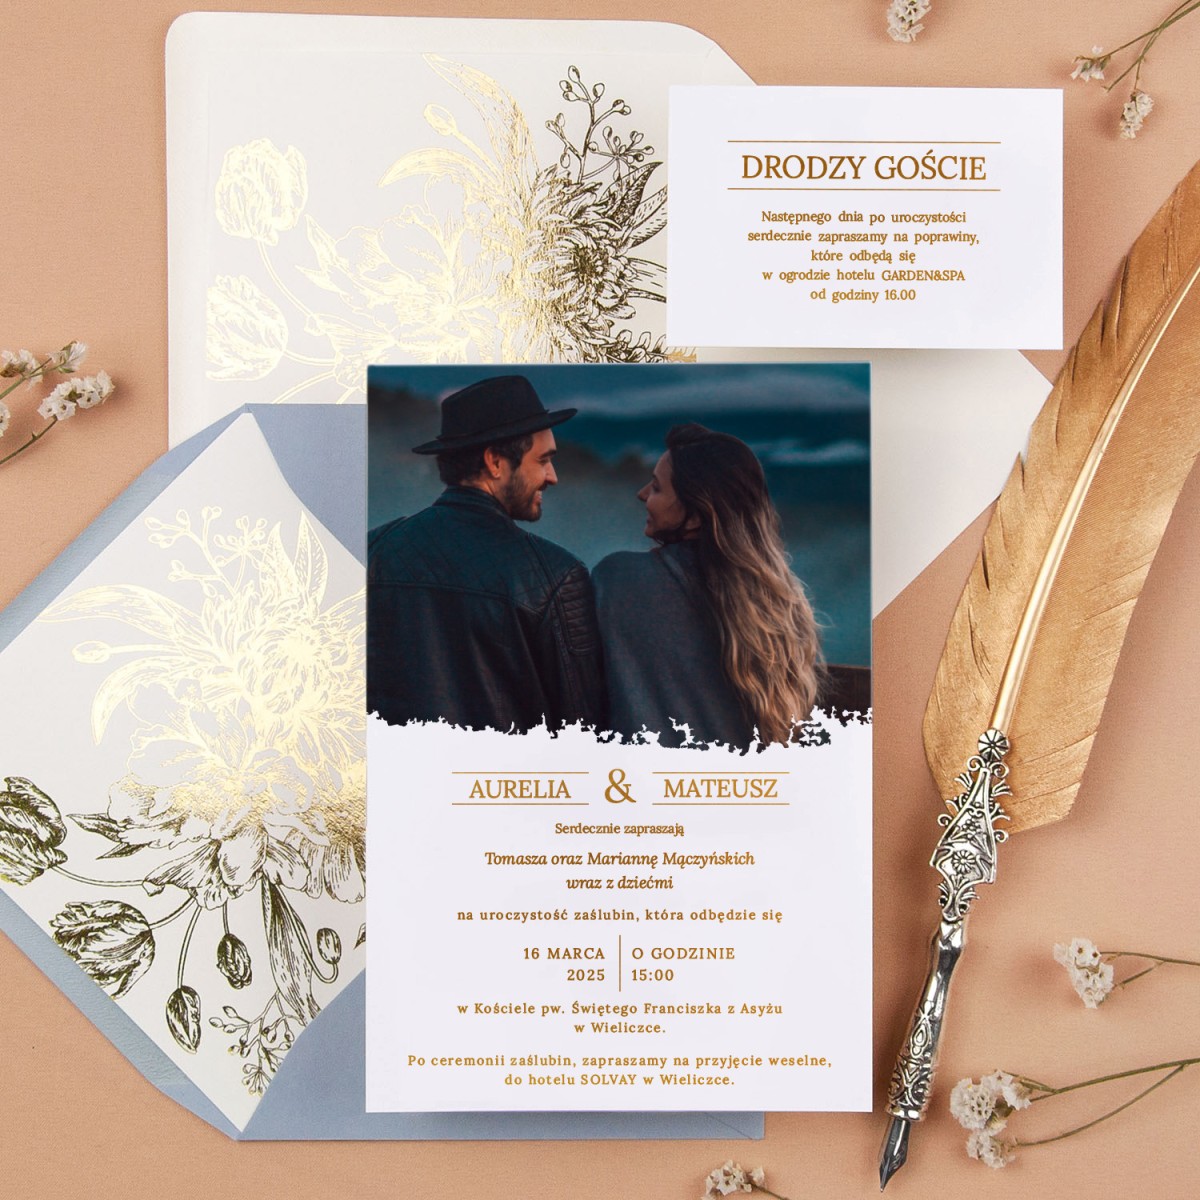 Minimalistyczne zaproszenia ślubne ze zdjęciem pary młodej oraz pozłacanymi napisami na białym papierze - Elegant - PRÓBKA